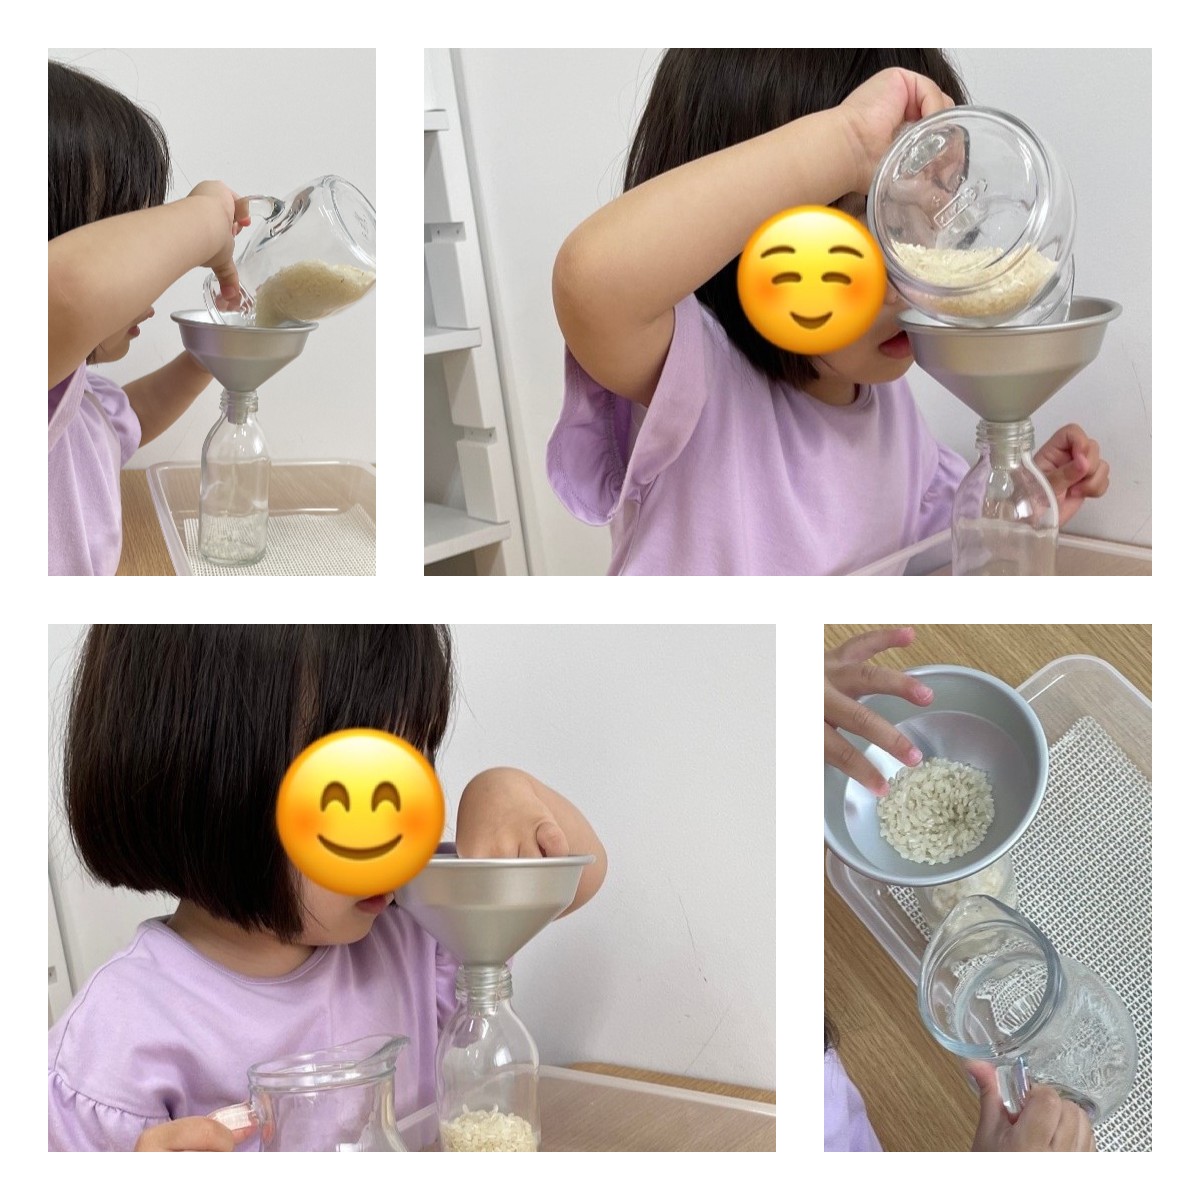 フロンティアキッズ ブログ記事 Aちゃん「米注ぎ」のお仕事のイメージサムネイル画像